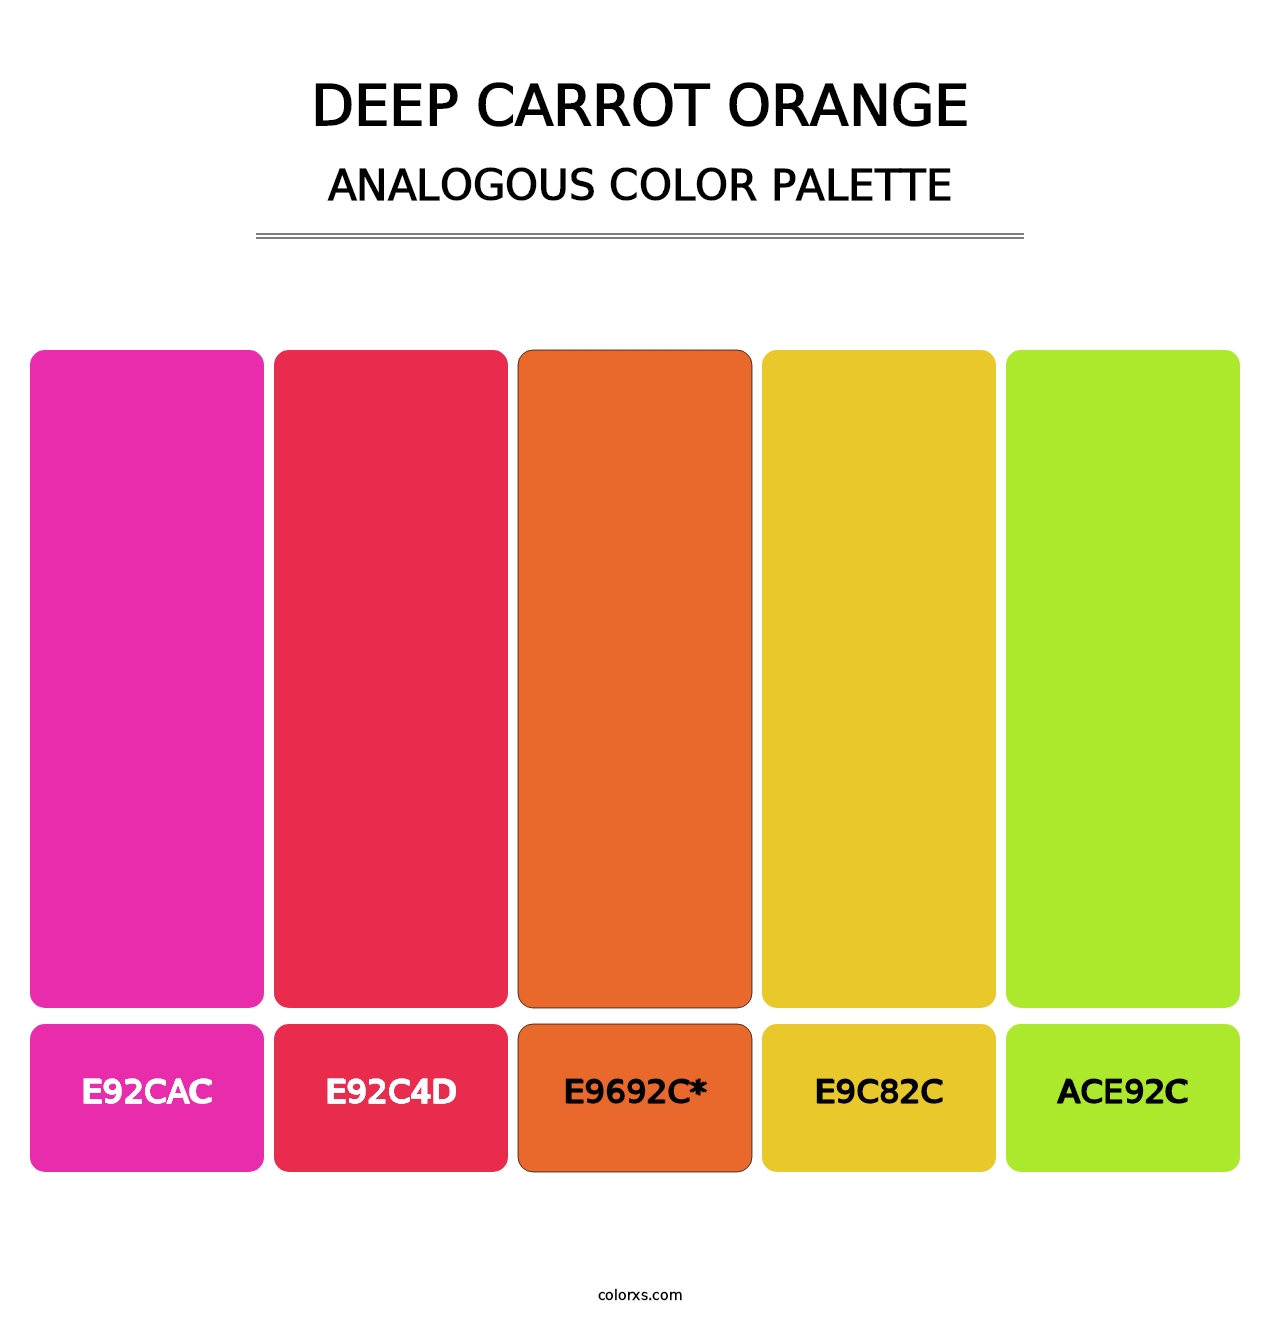 Deep Carrot Orange - Analogous Color Palette